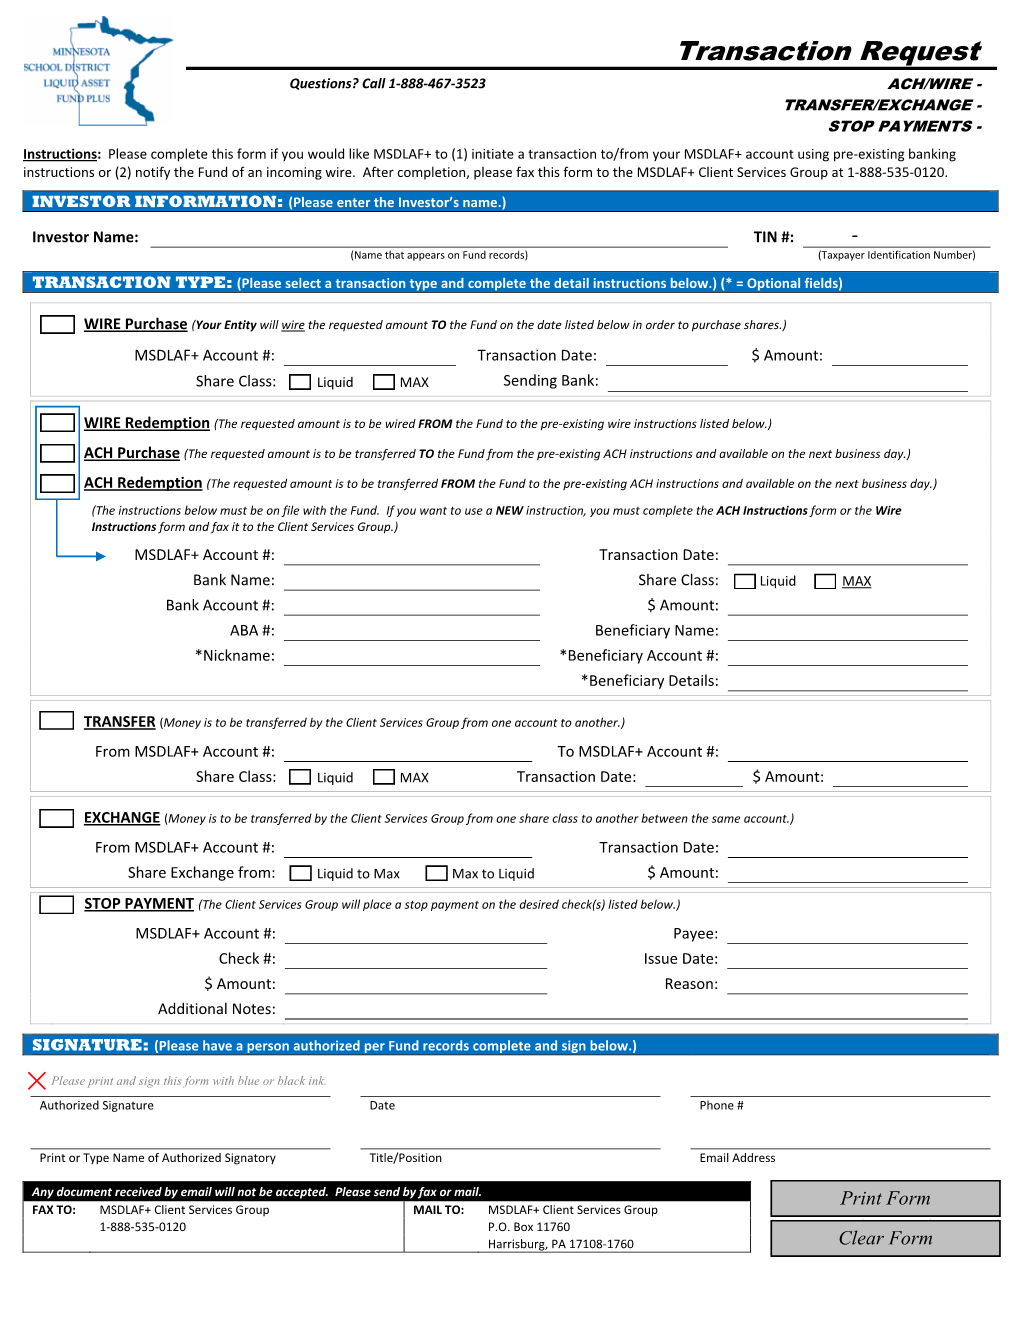 Transaction Request Form